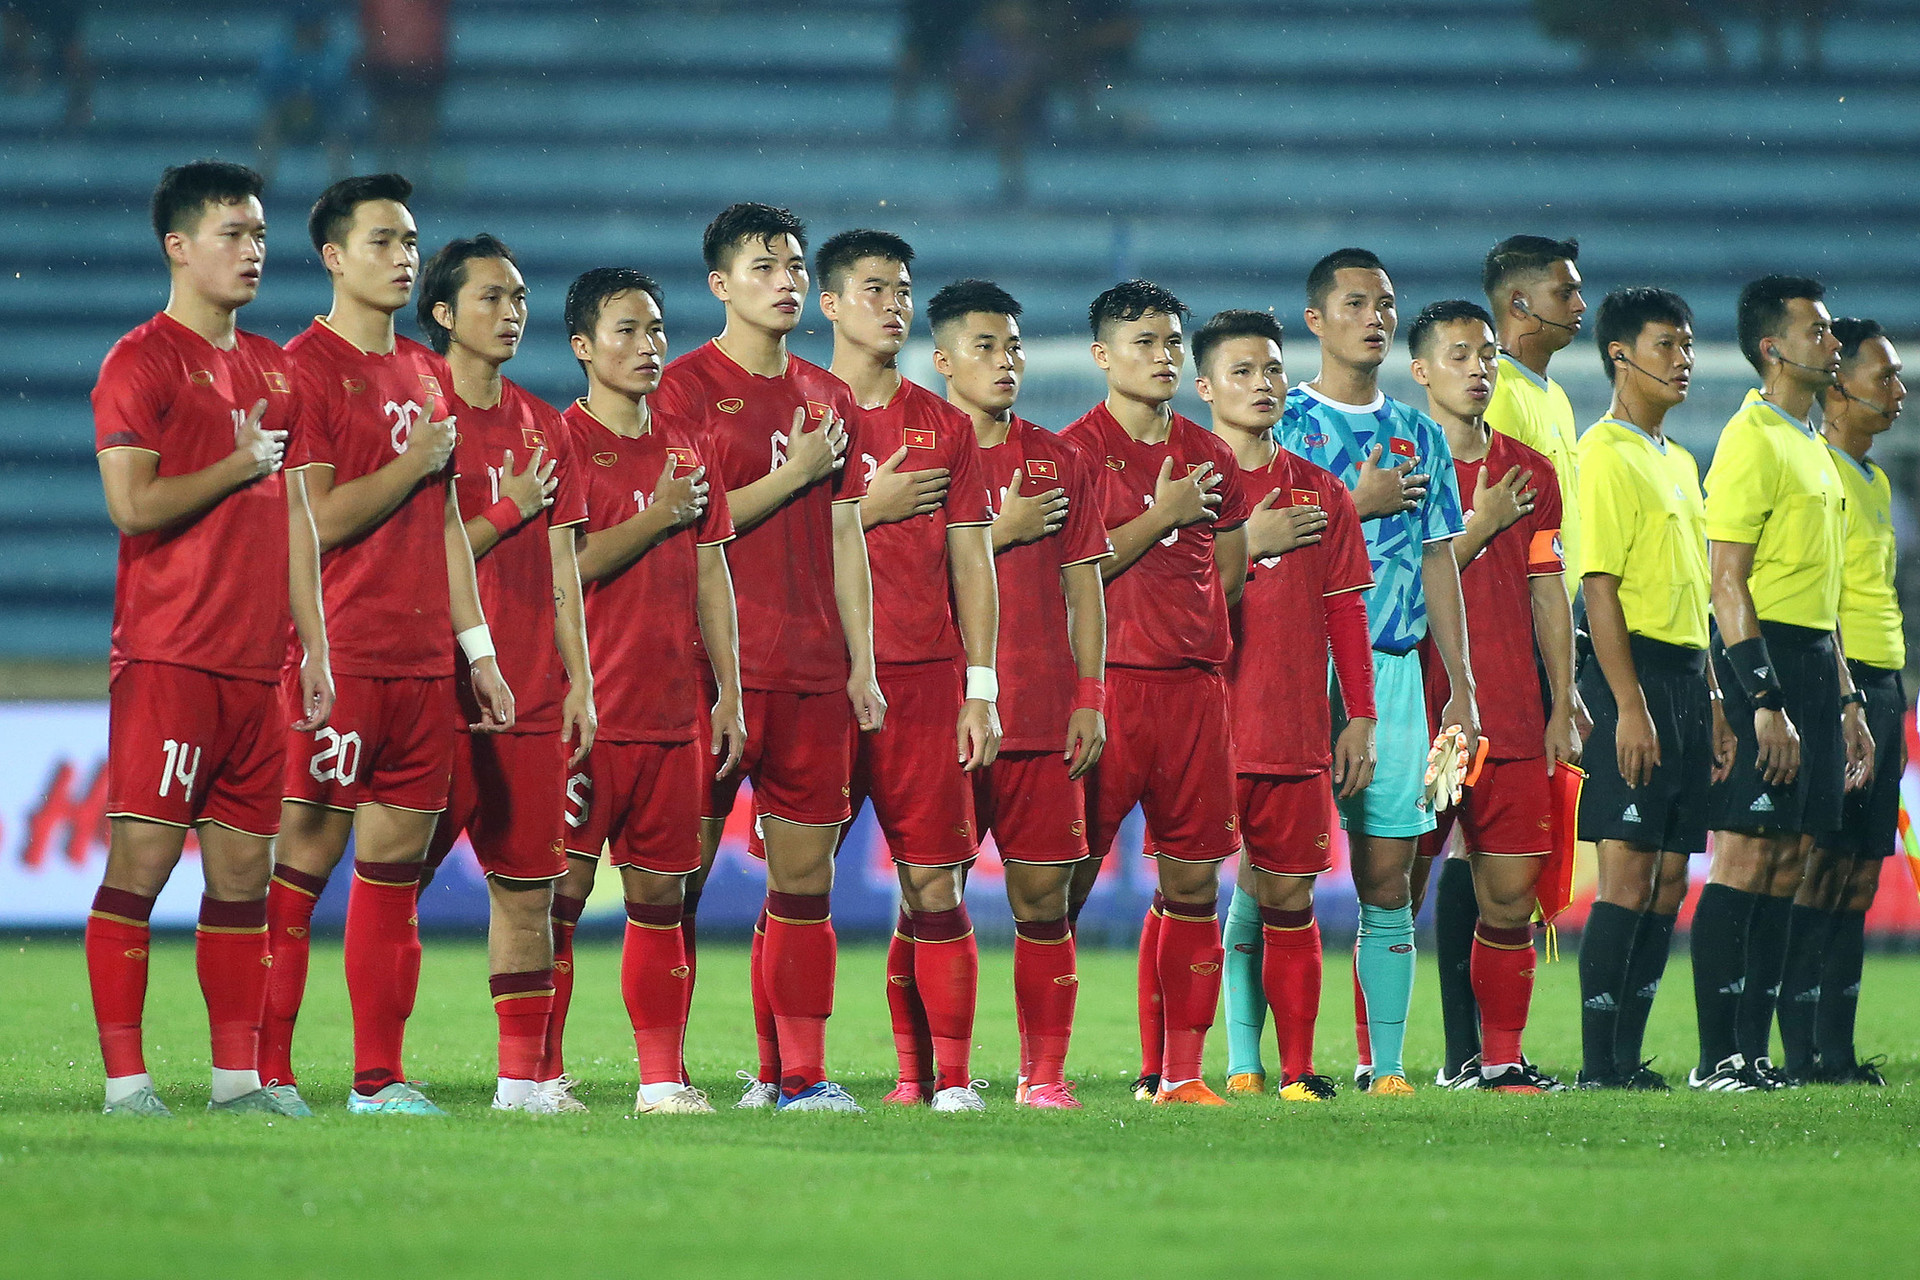 Tuyển Việt Nam làm mới đội hình với 15/33 cầu thủ trong độ tuổi U23 - Ảnh: H.TÙNG